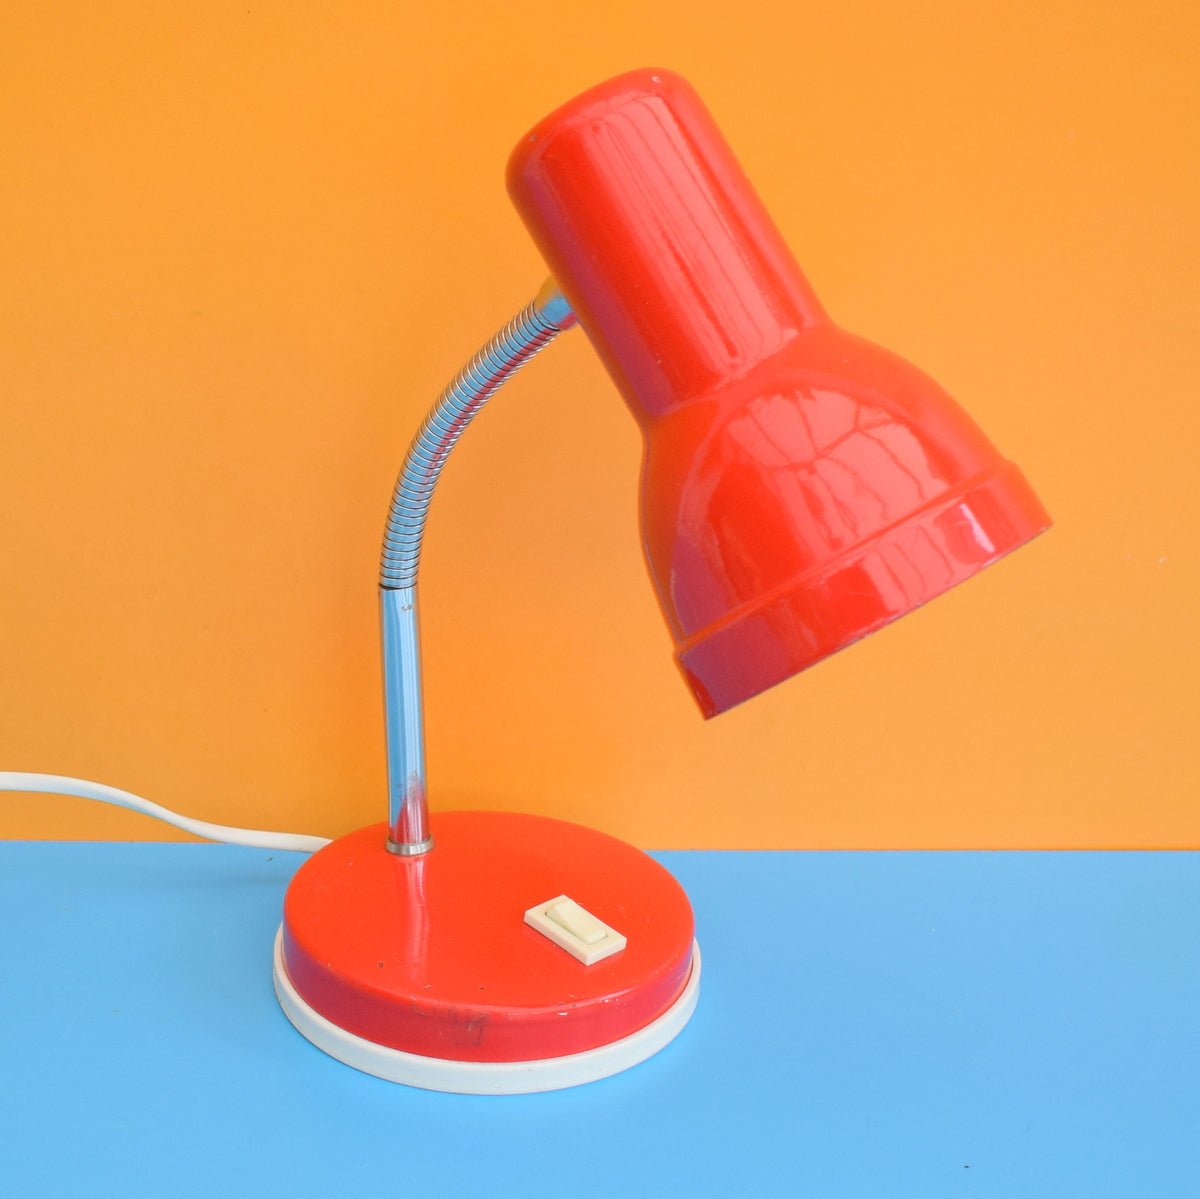 Vintage 1970s Gooseneck Desk Lamp - Red